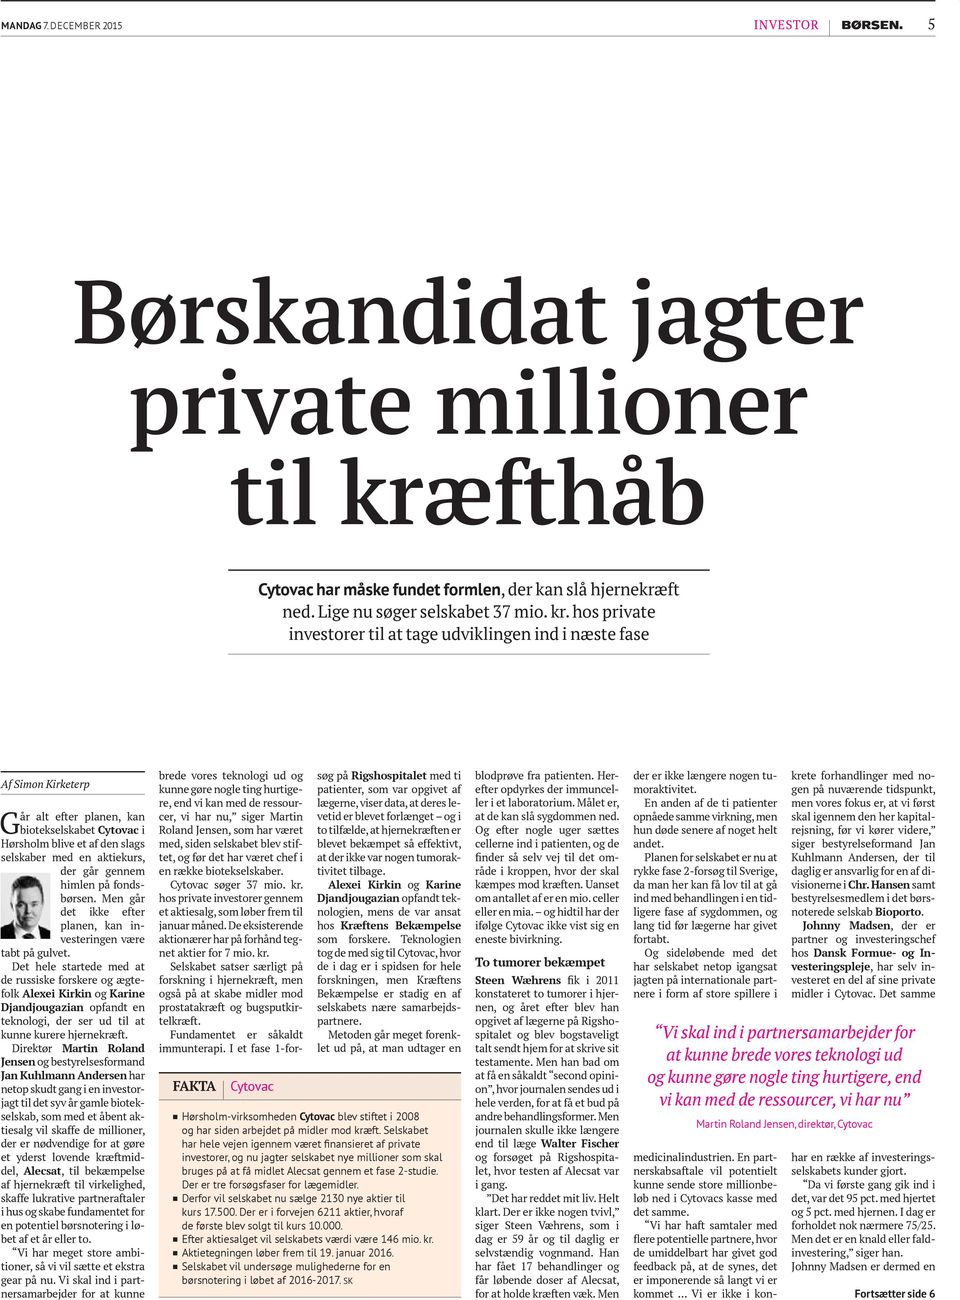 hos private investorer til at tage udviklingen ind i næste fase Af Simon Kirketerp Går alt efter planen, kan biotekselskabet Cytovac i Hørsholm blive et af den slags selskaber med en aktiekurs, der